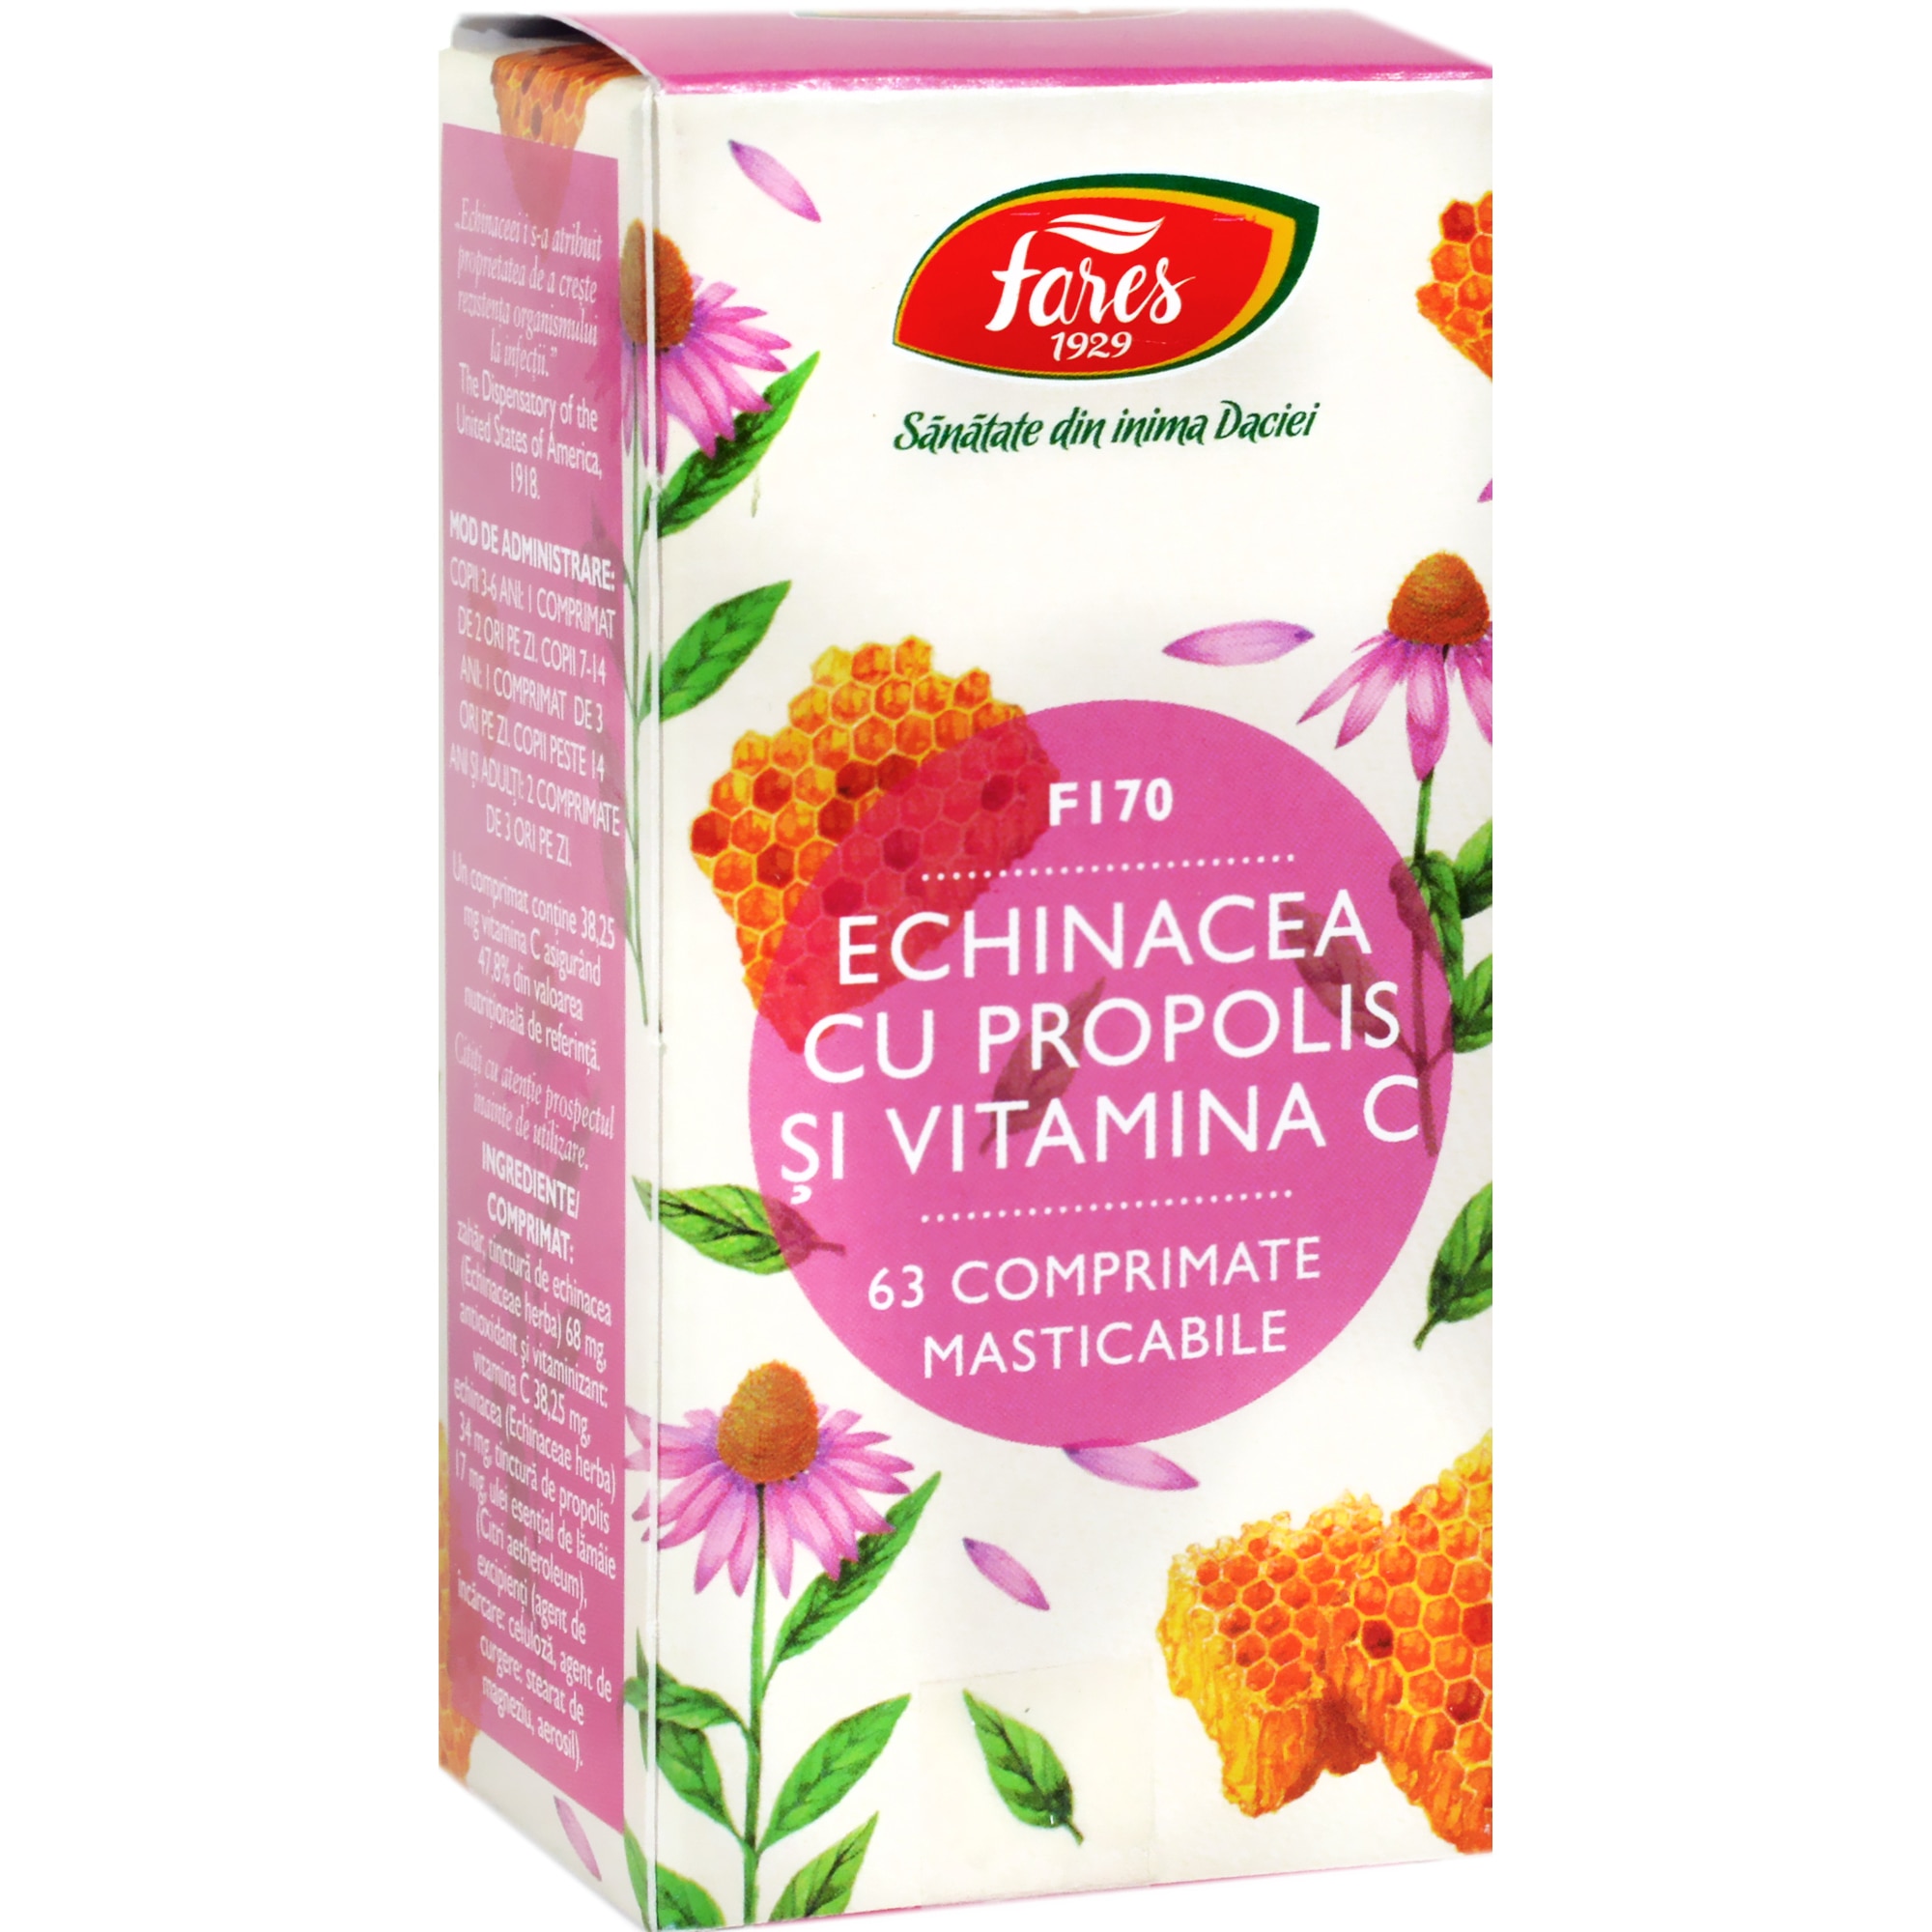 Vitamina C : Beneficii, doza recomandata, efectele consumului excesiv | turismmiraslau.ro